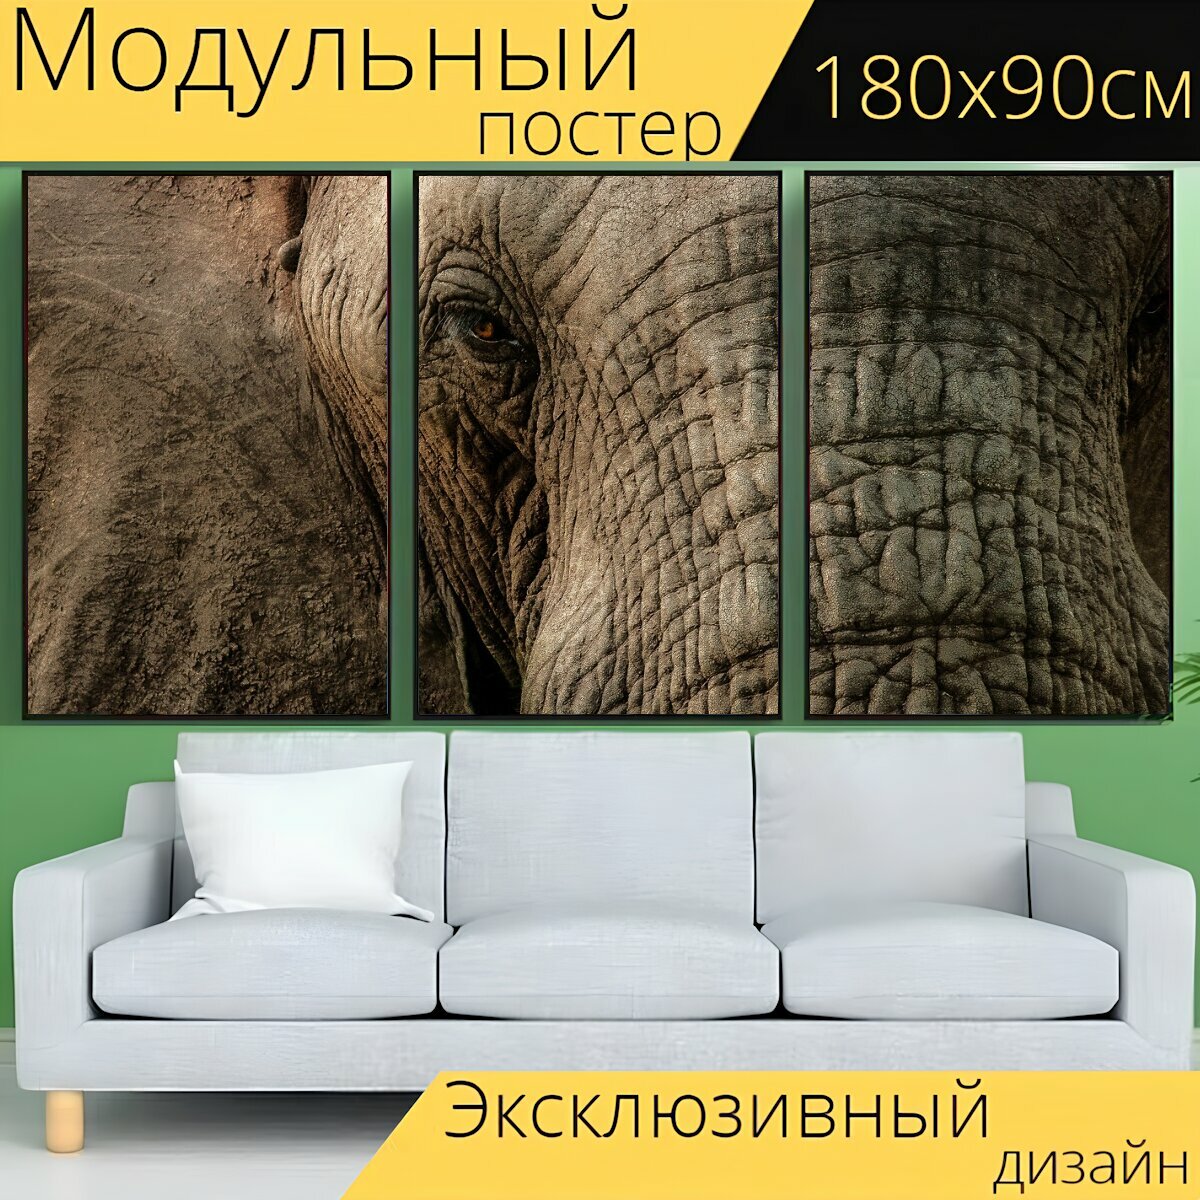 Модульный постер "Слон, закрыть, ствол" 180 x 90 см. для интерьера